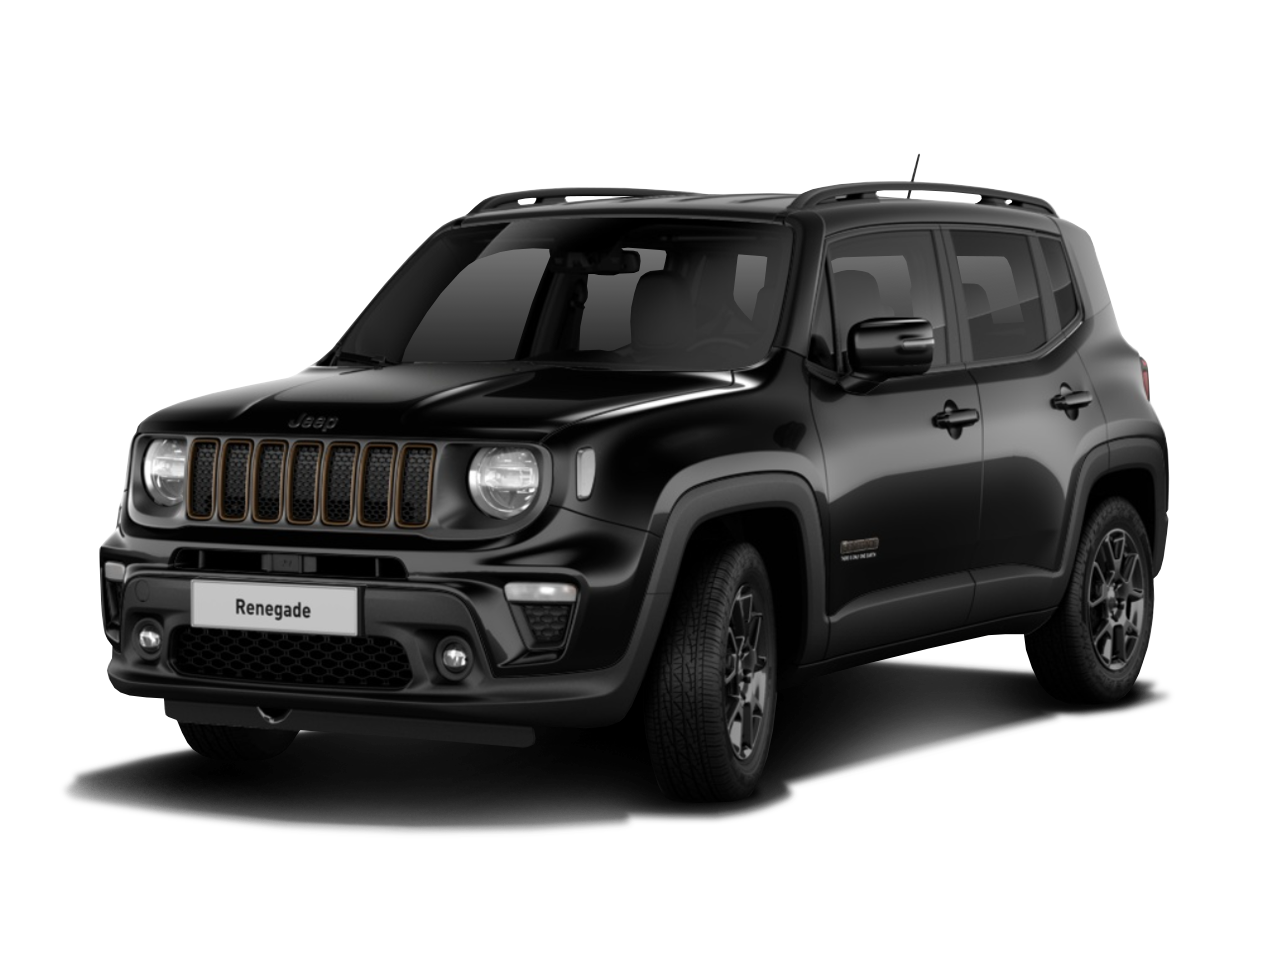 Jeep Renegade für 199,00 € brutto leasen